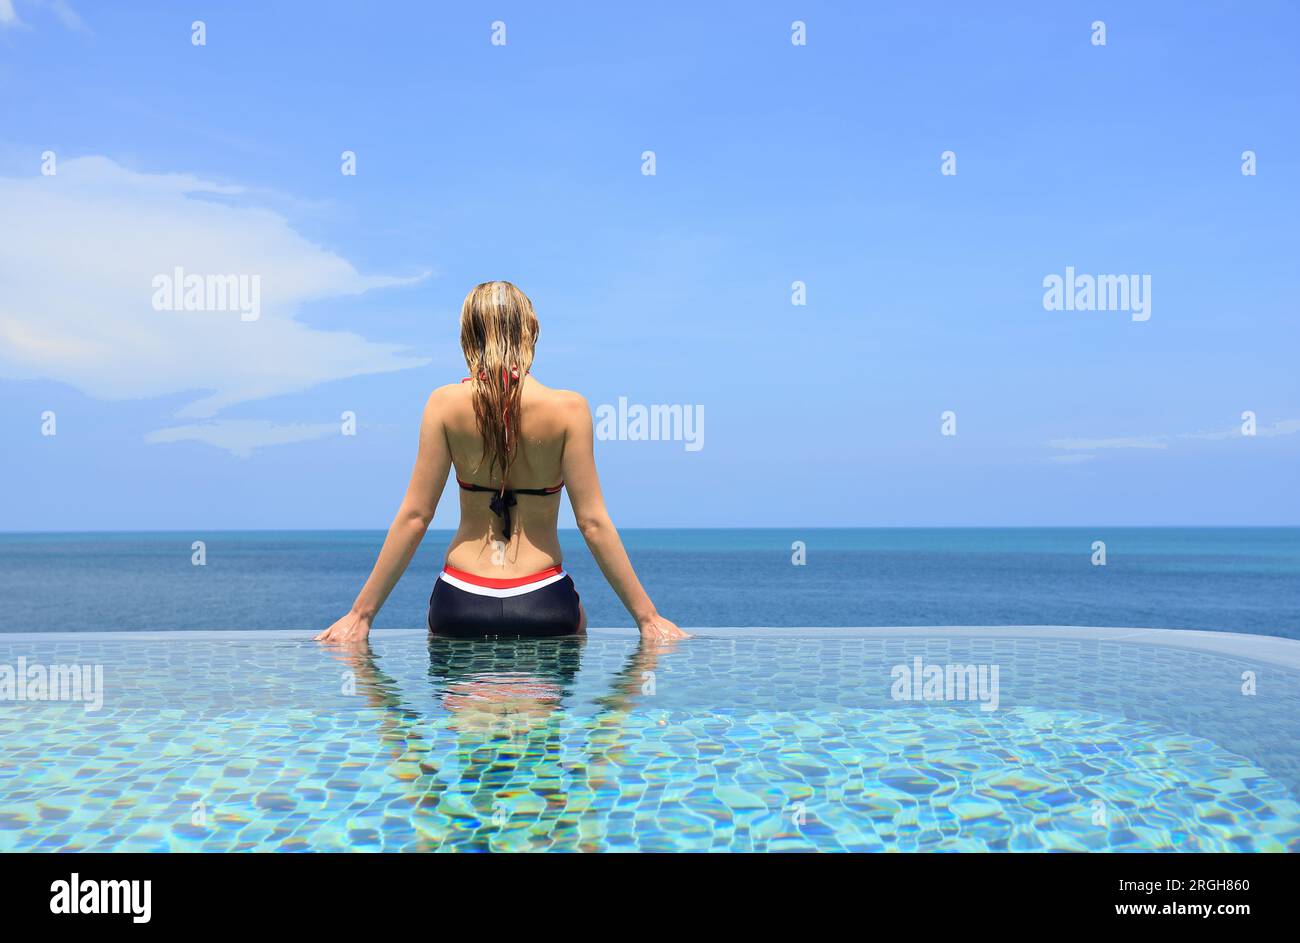 Junge Frau im Schwimmbad auf dem Seeweg Stockfoto